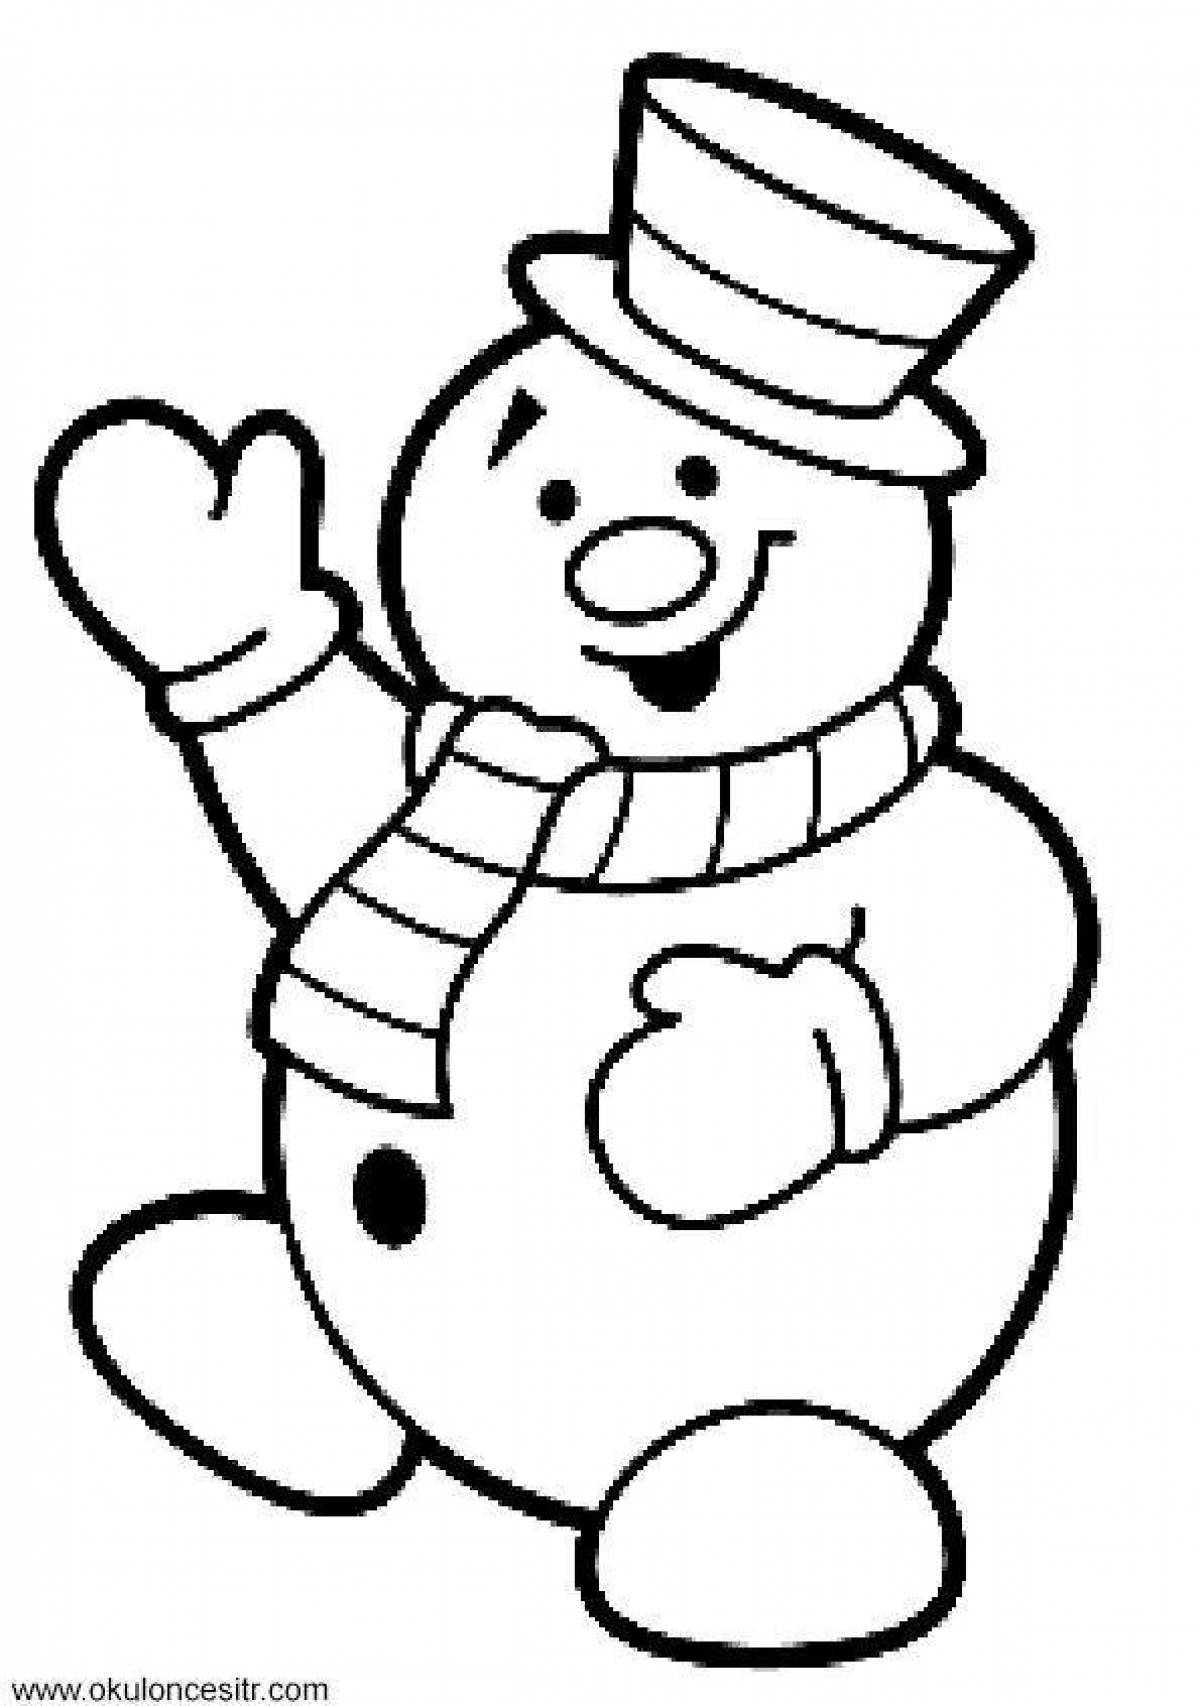 Раскраска Снеговик для детей